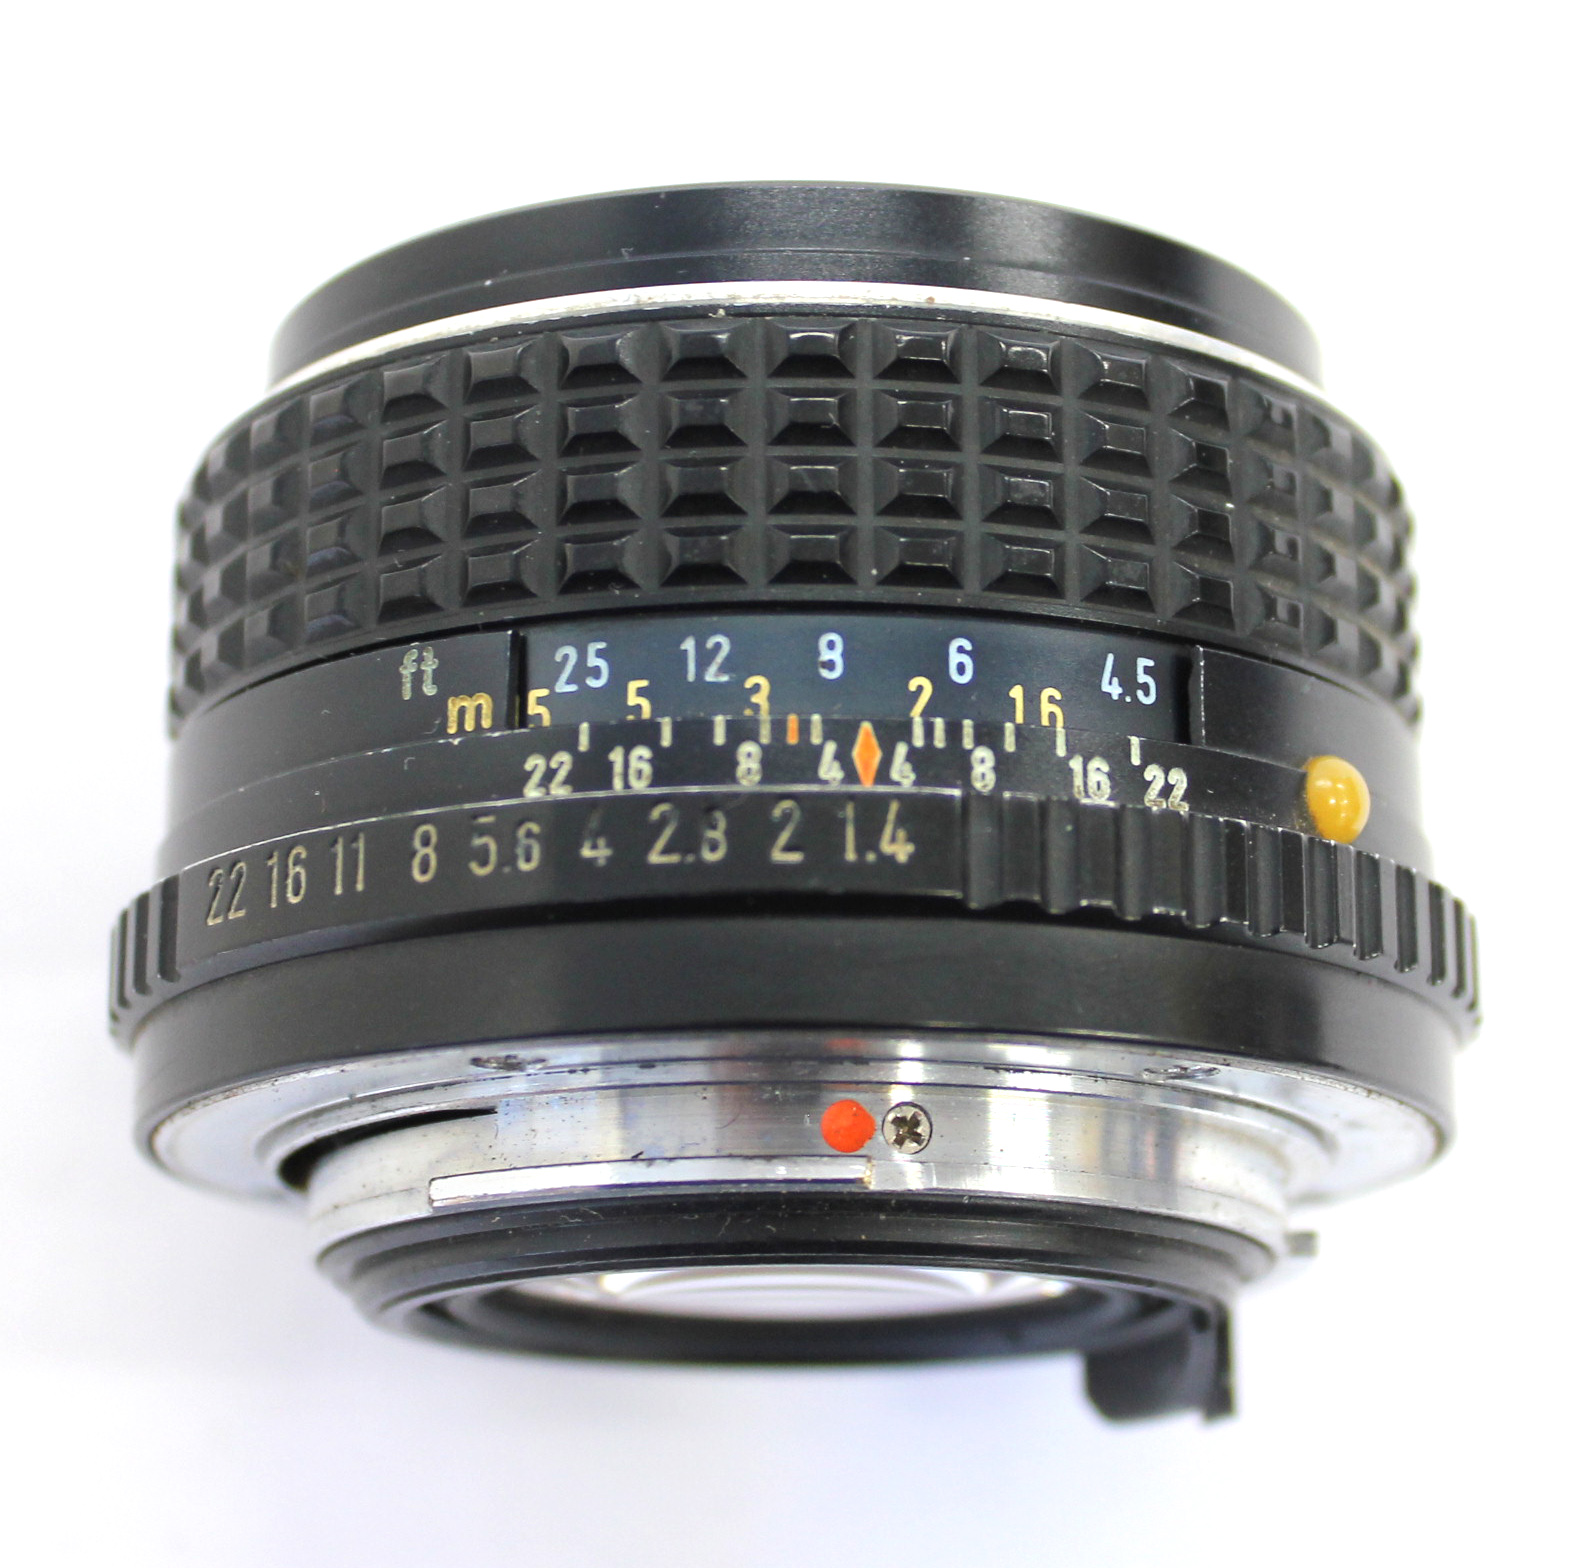 Pentax MX SLR 35mm Film Camera with SMC Pentax-M 50mm F/1.4 from Japan  (C1603) | Big Fish J-Camera (Big Fish J-Shop)